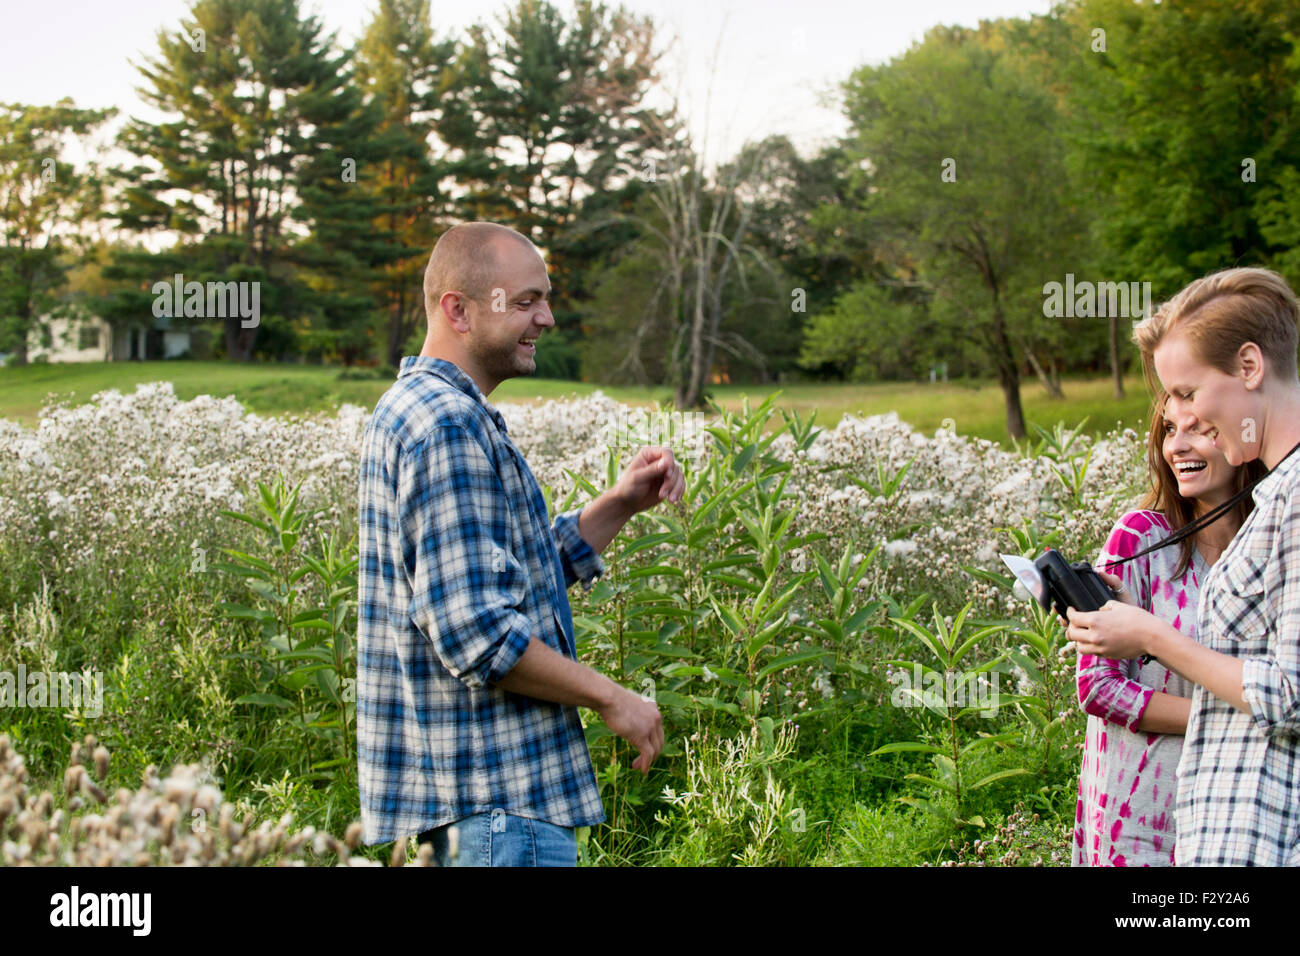 Drei Menschen, ein Mann und zwei Frauen in einer Wildblumenwiese stehen. Eine Frau hält eine Kamera mit Birne Flash-Anlage. Stockfoto